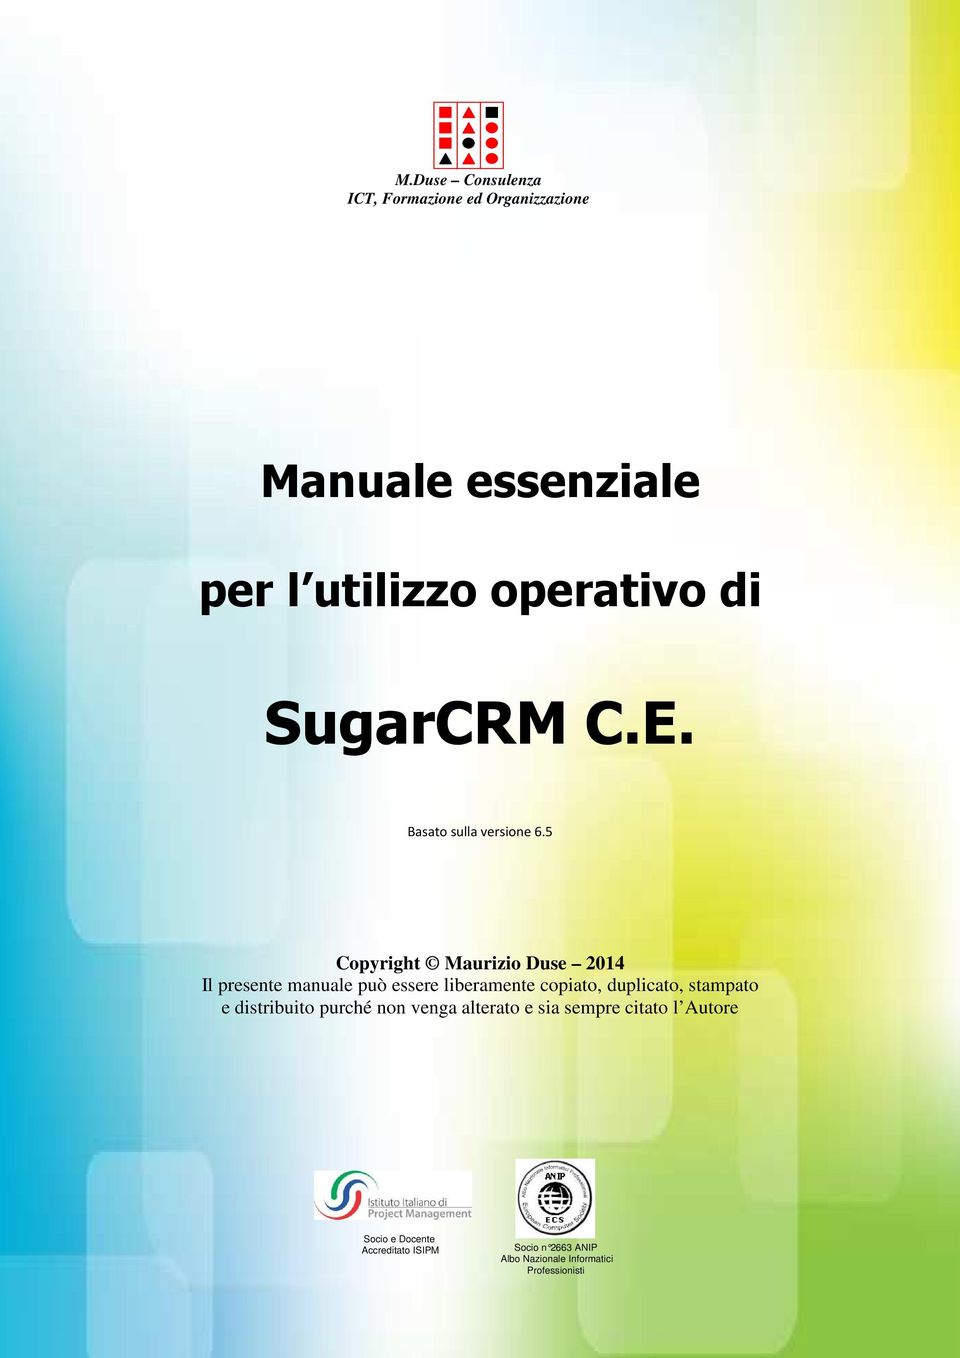 5 Copyright Maurizio Duse 2014 Il presente manuale può essere liberamente copiato, duplicato, stampato e distribuito purché non venga